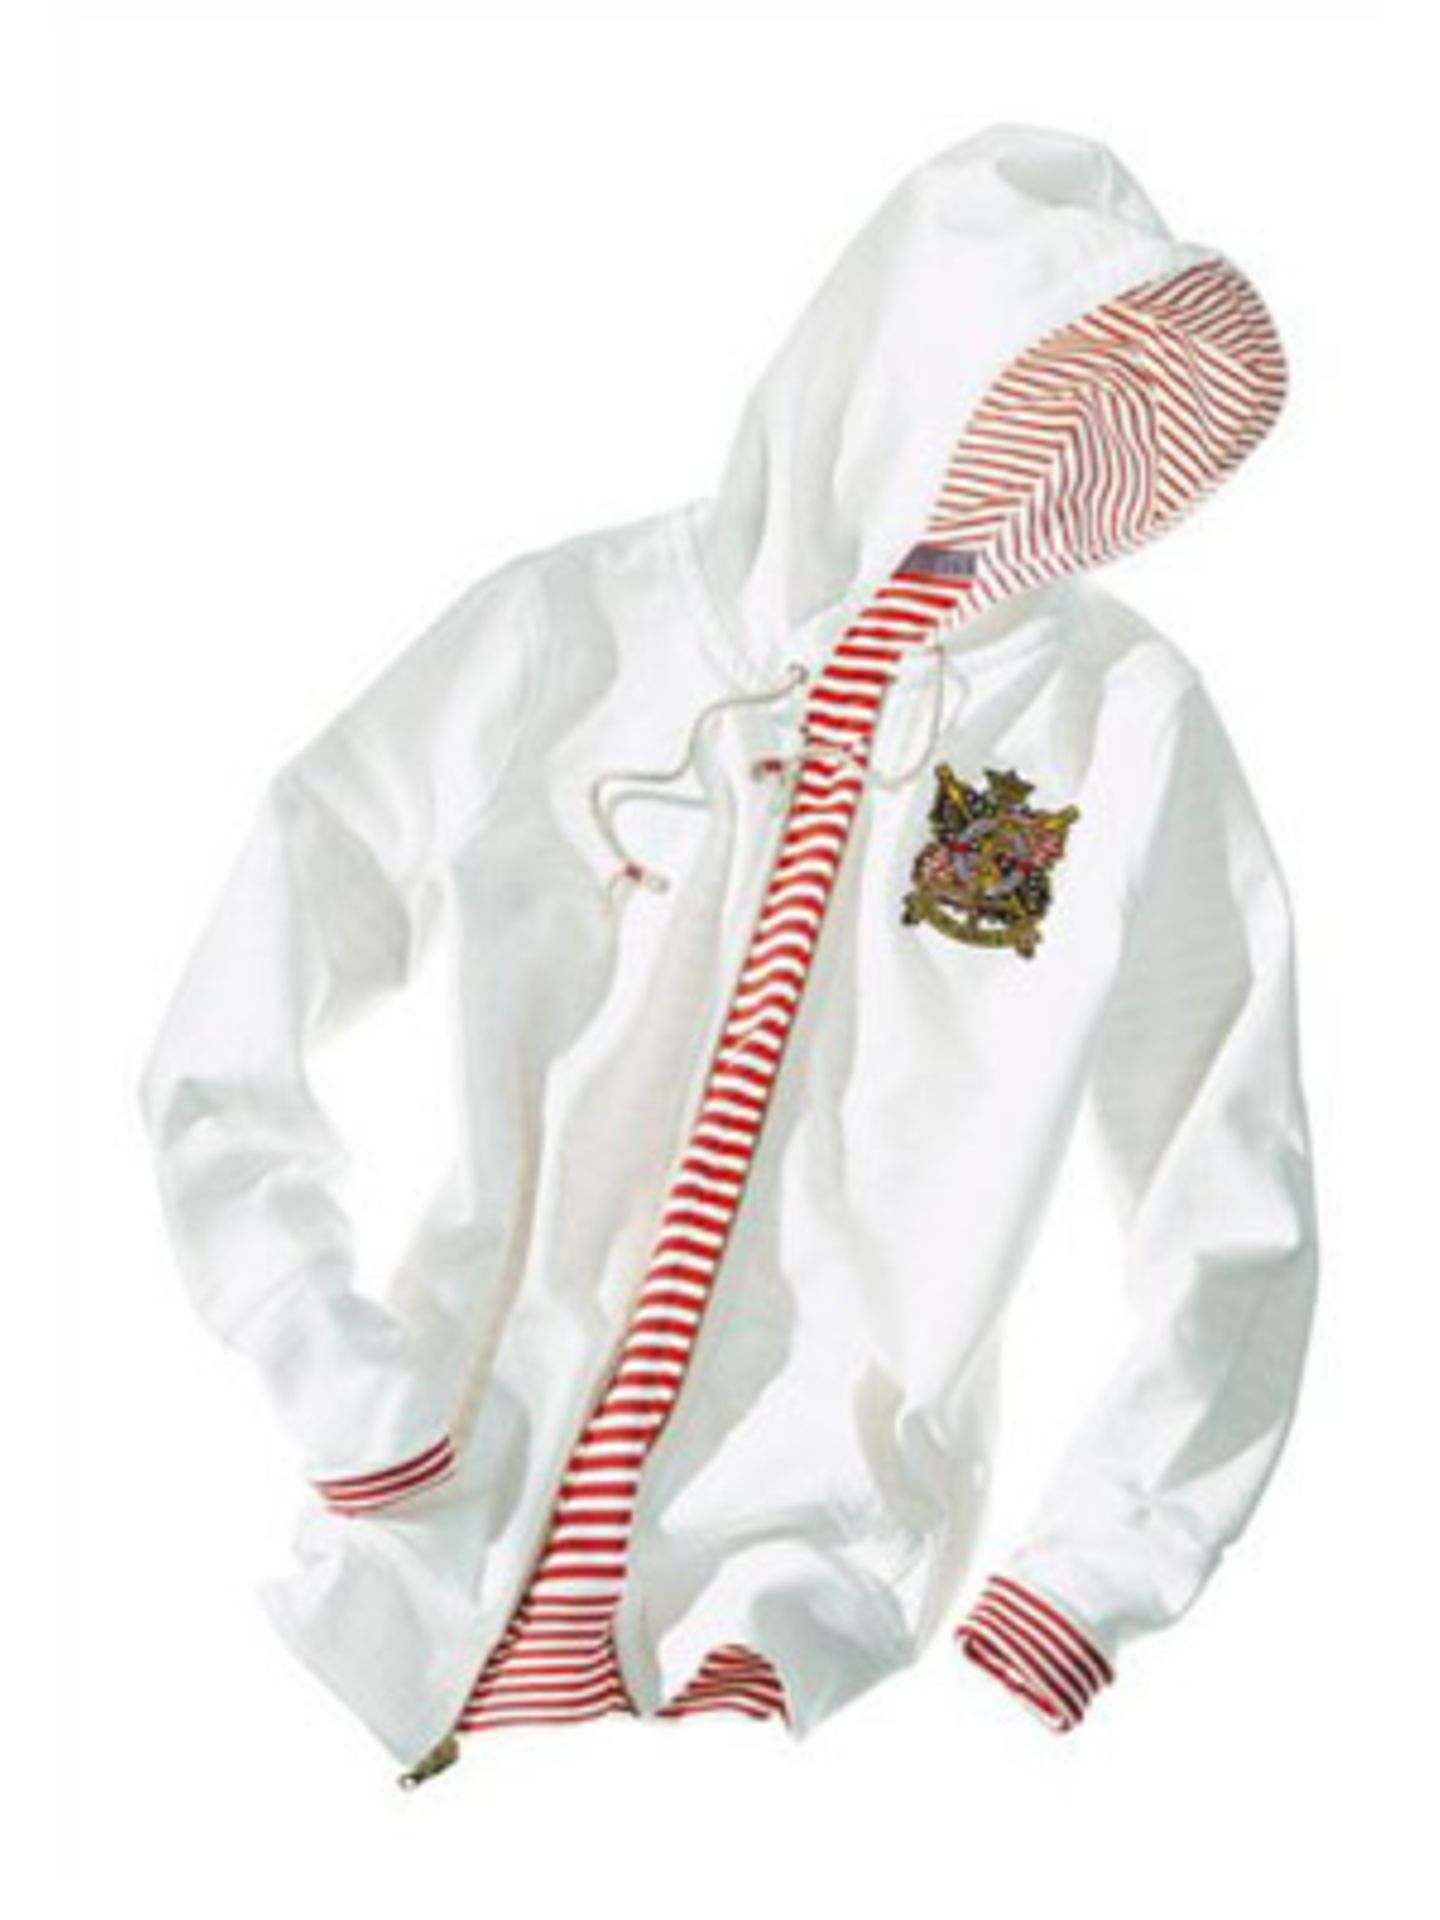 Kapuzen-Pullover mit Stickerei und geringeltem Innenfutter von Ralph Lauren, um 129 Euro. Über www.brandneu.de.